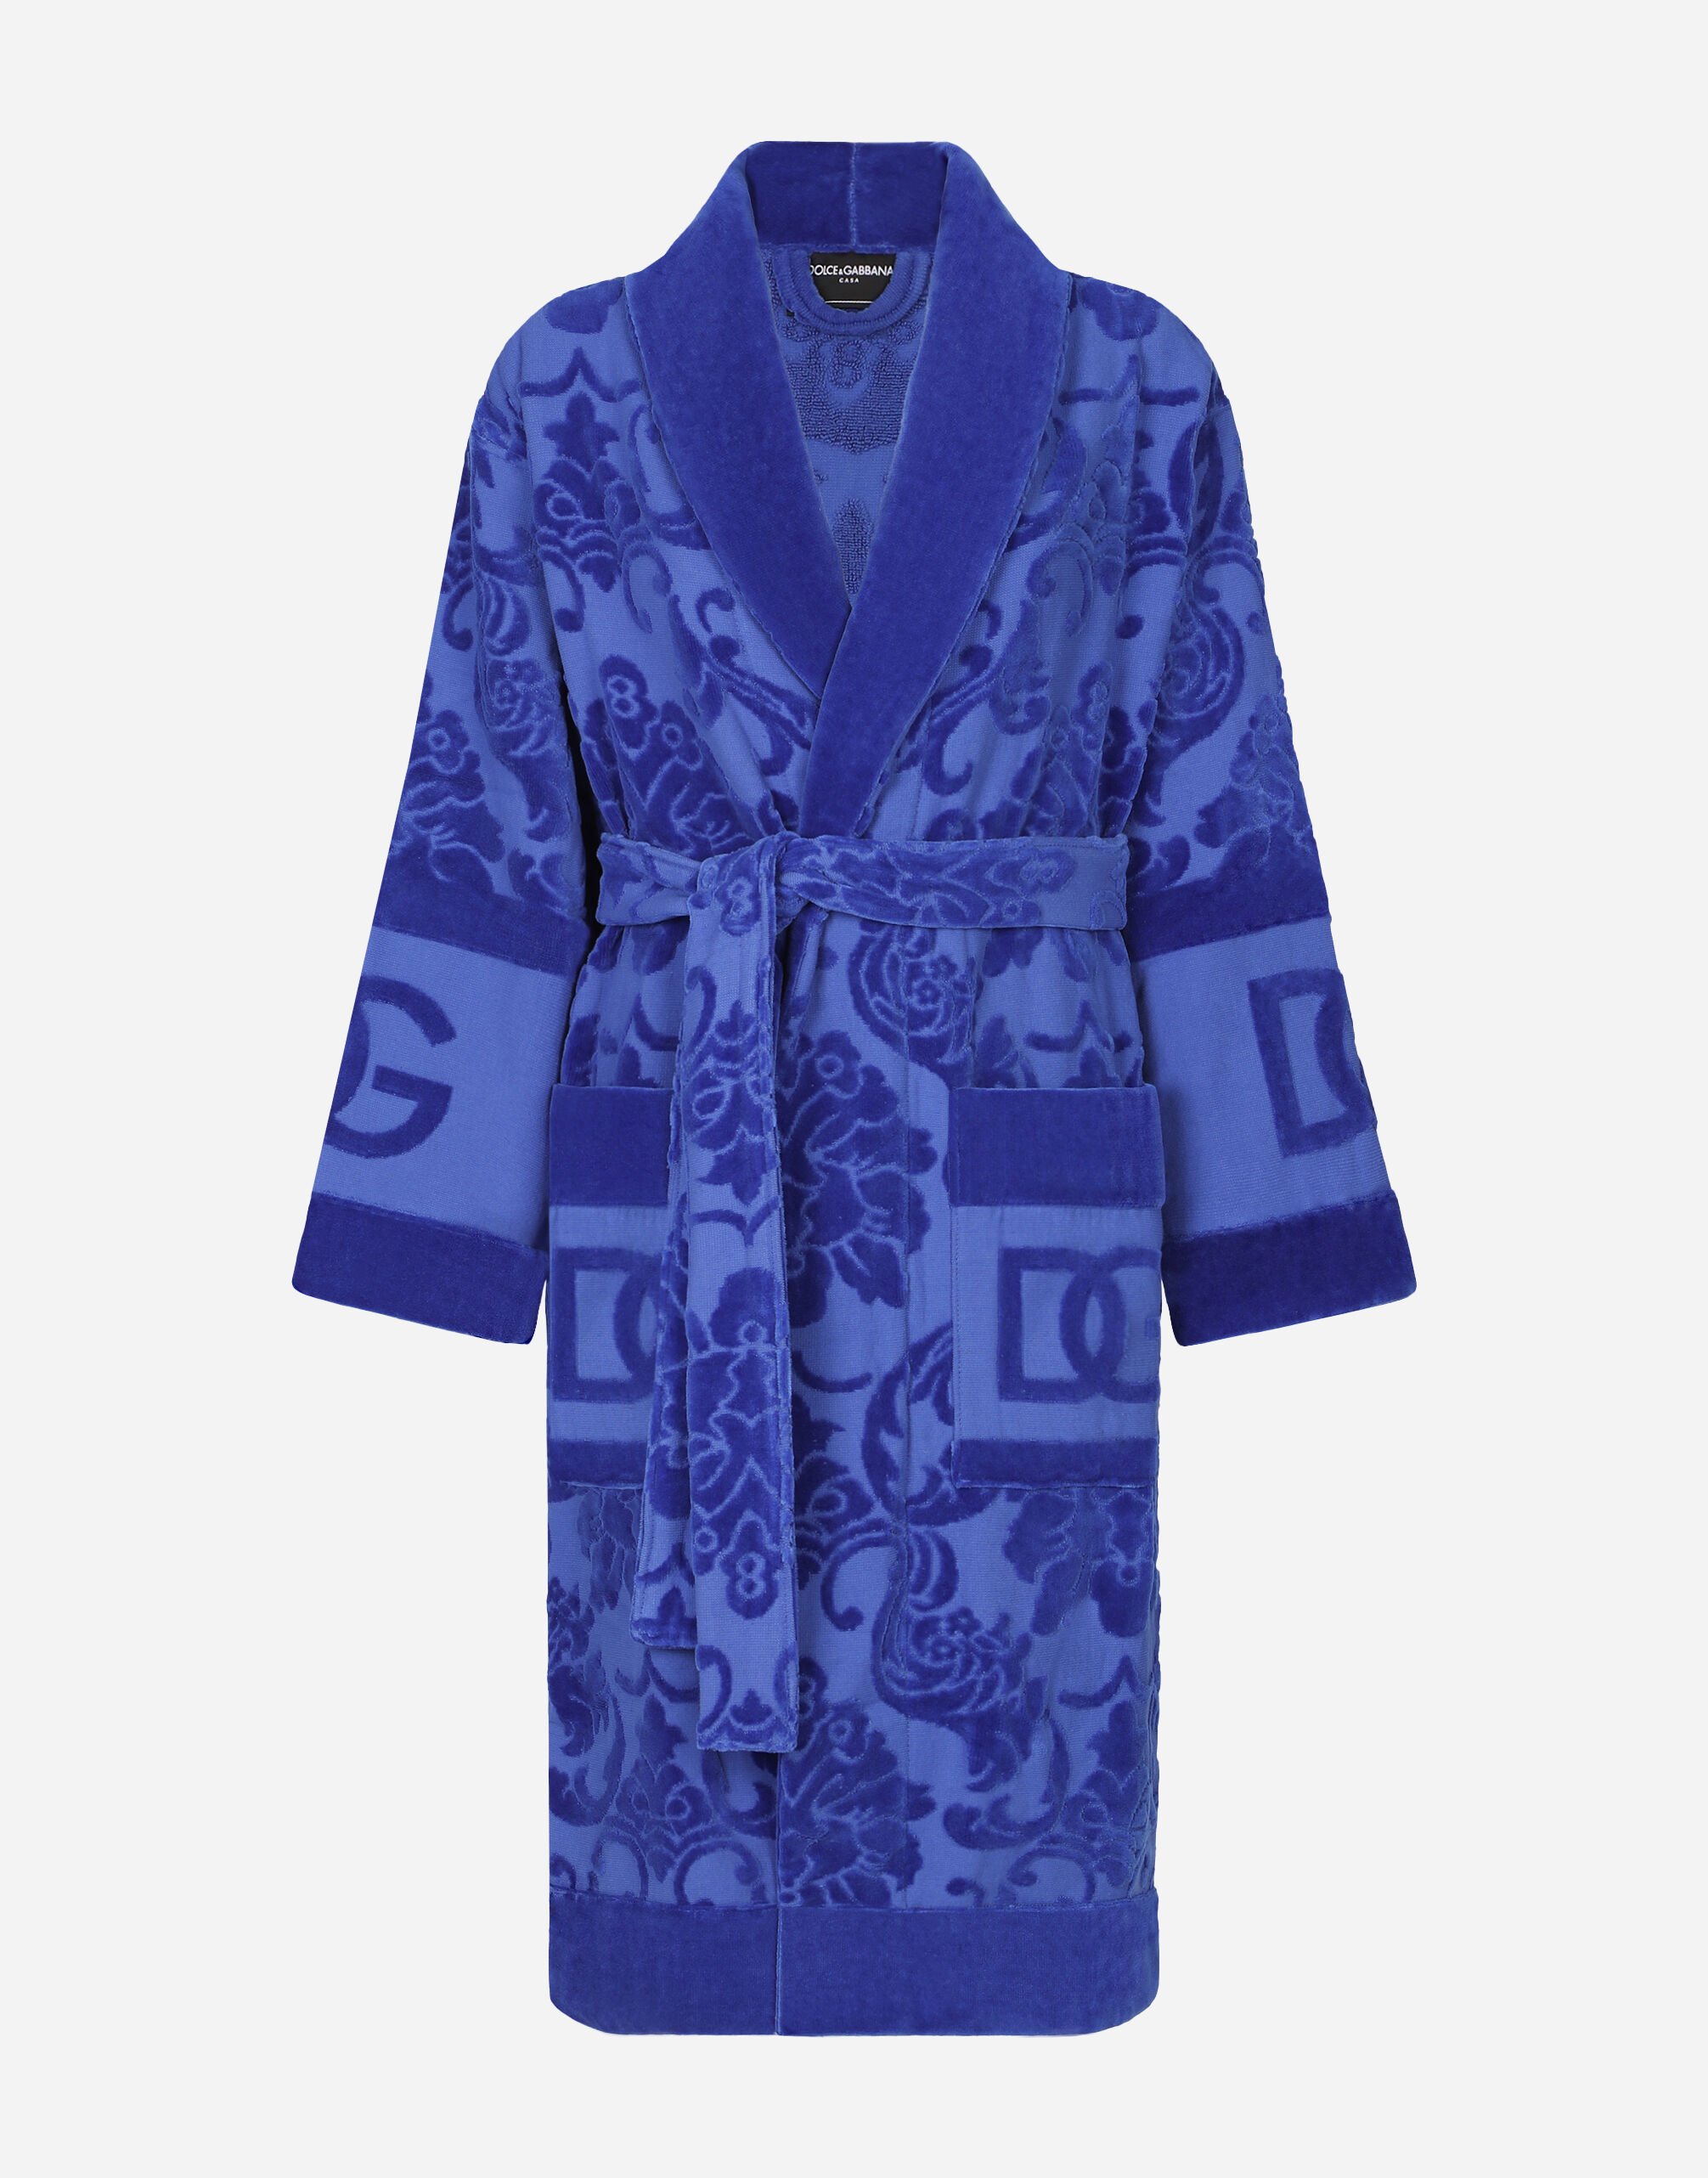 Dolce & Gabbana Bath Robe in Terry Cotton Jacquard Multicolor TC0100TCA88